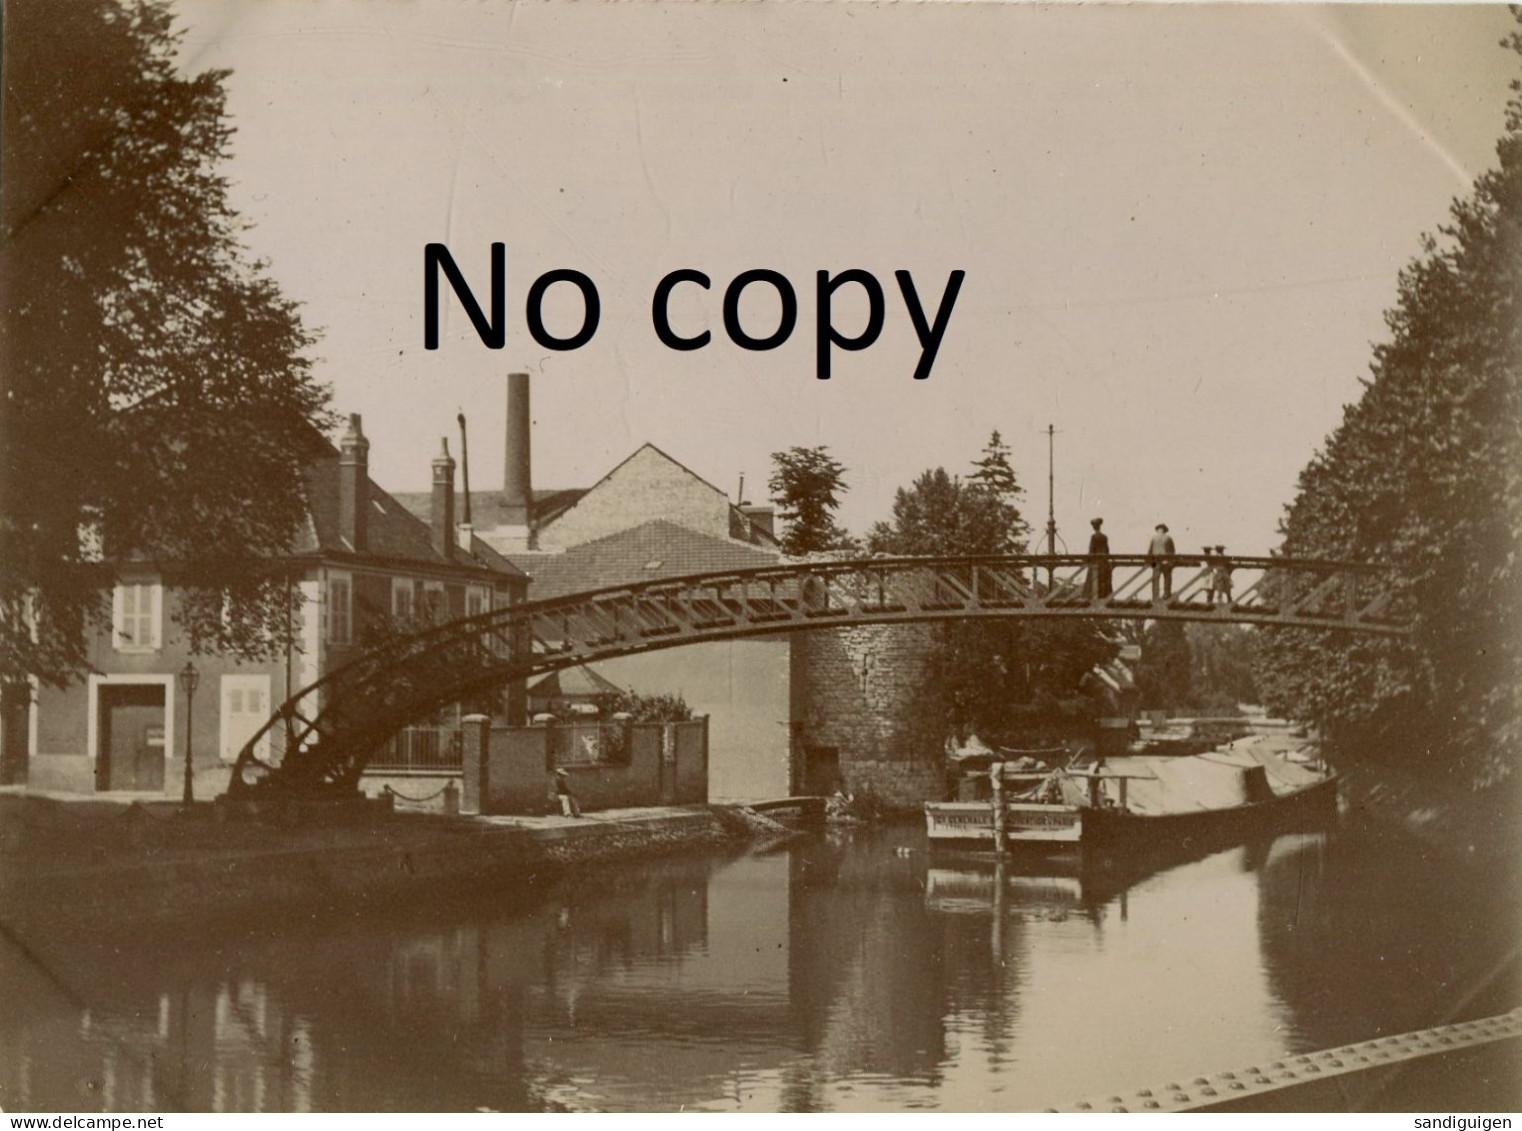 PHOTO FRANCAISE - PONT SUR LE CANAL A MONTARGIS PRES DE AMILLY LOIRET 45 - VERS 1900 - 1910 - Lieux